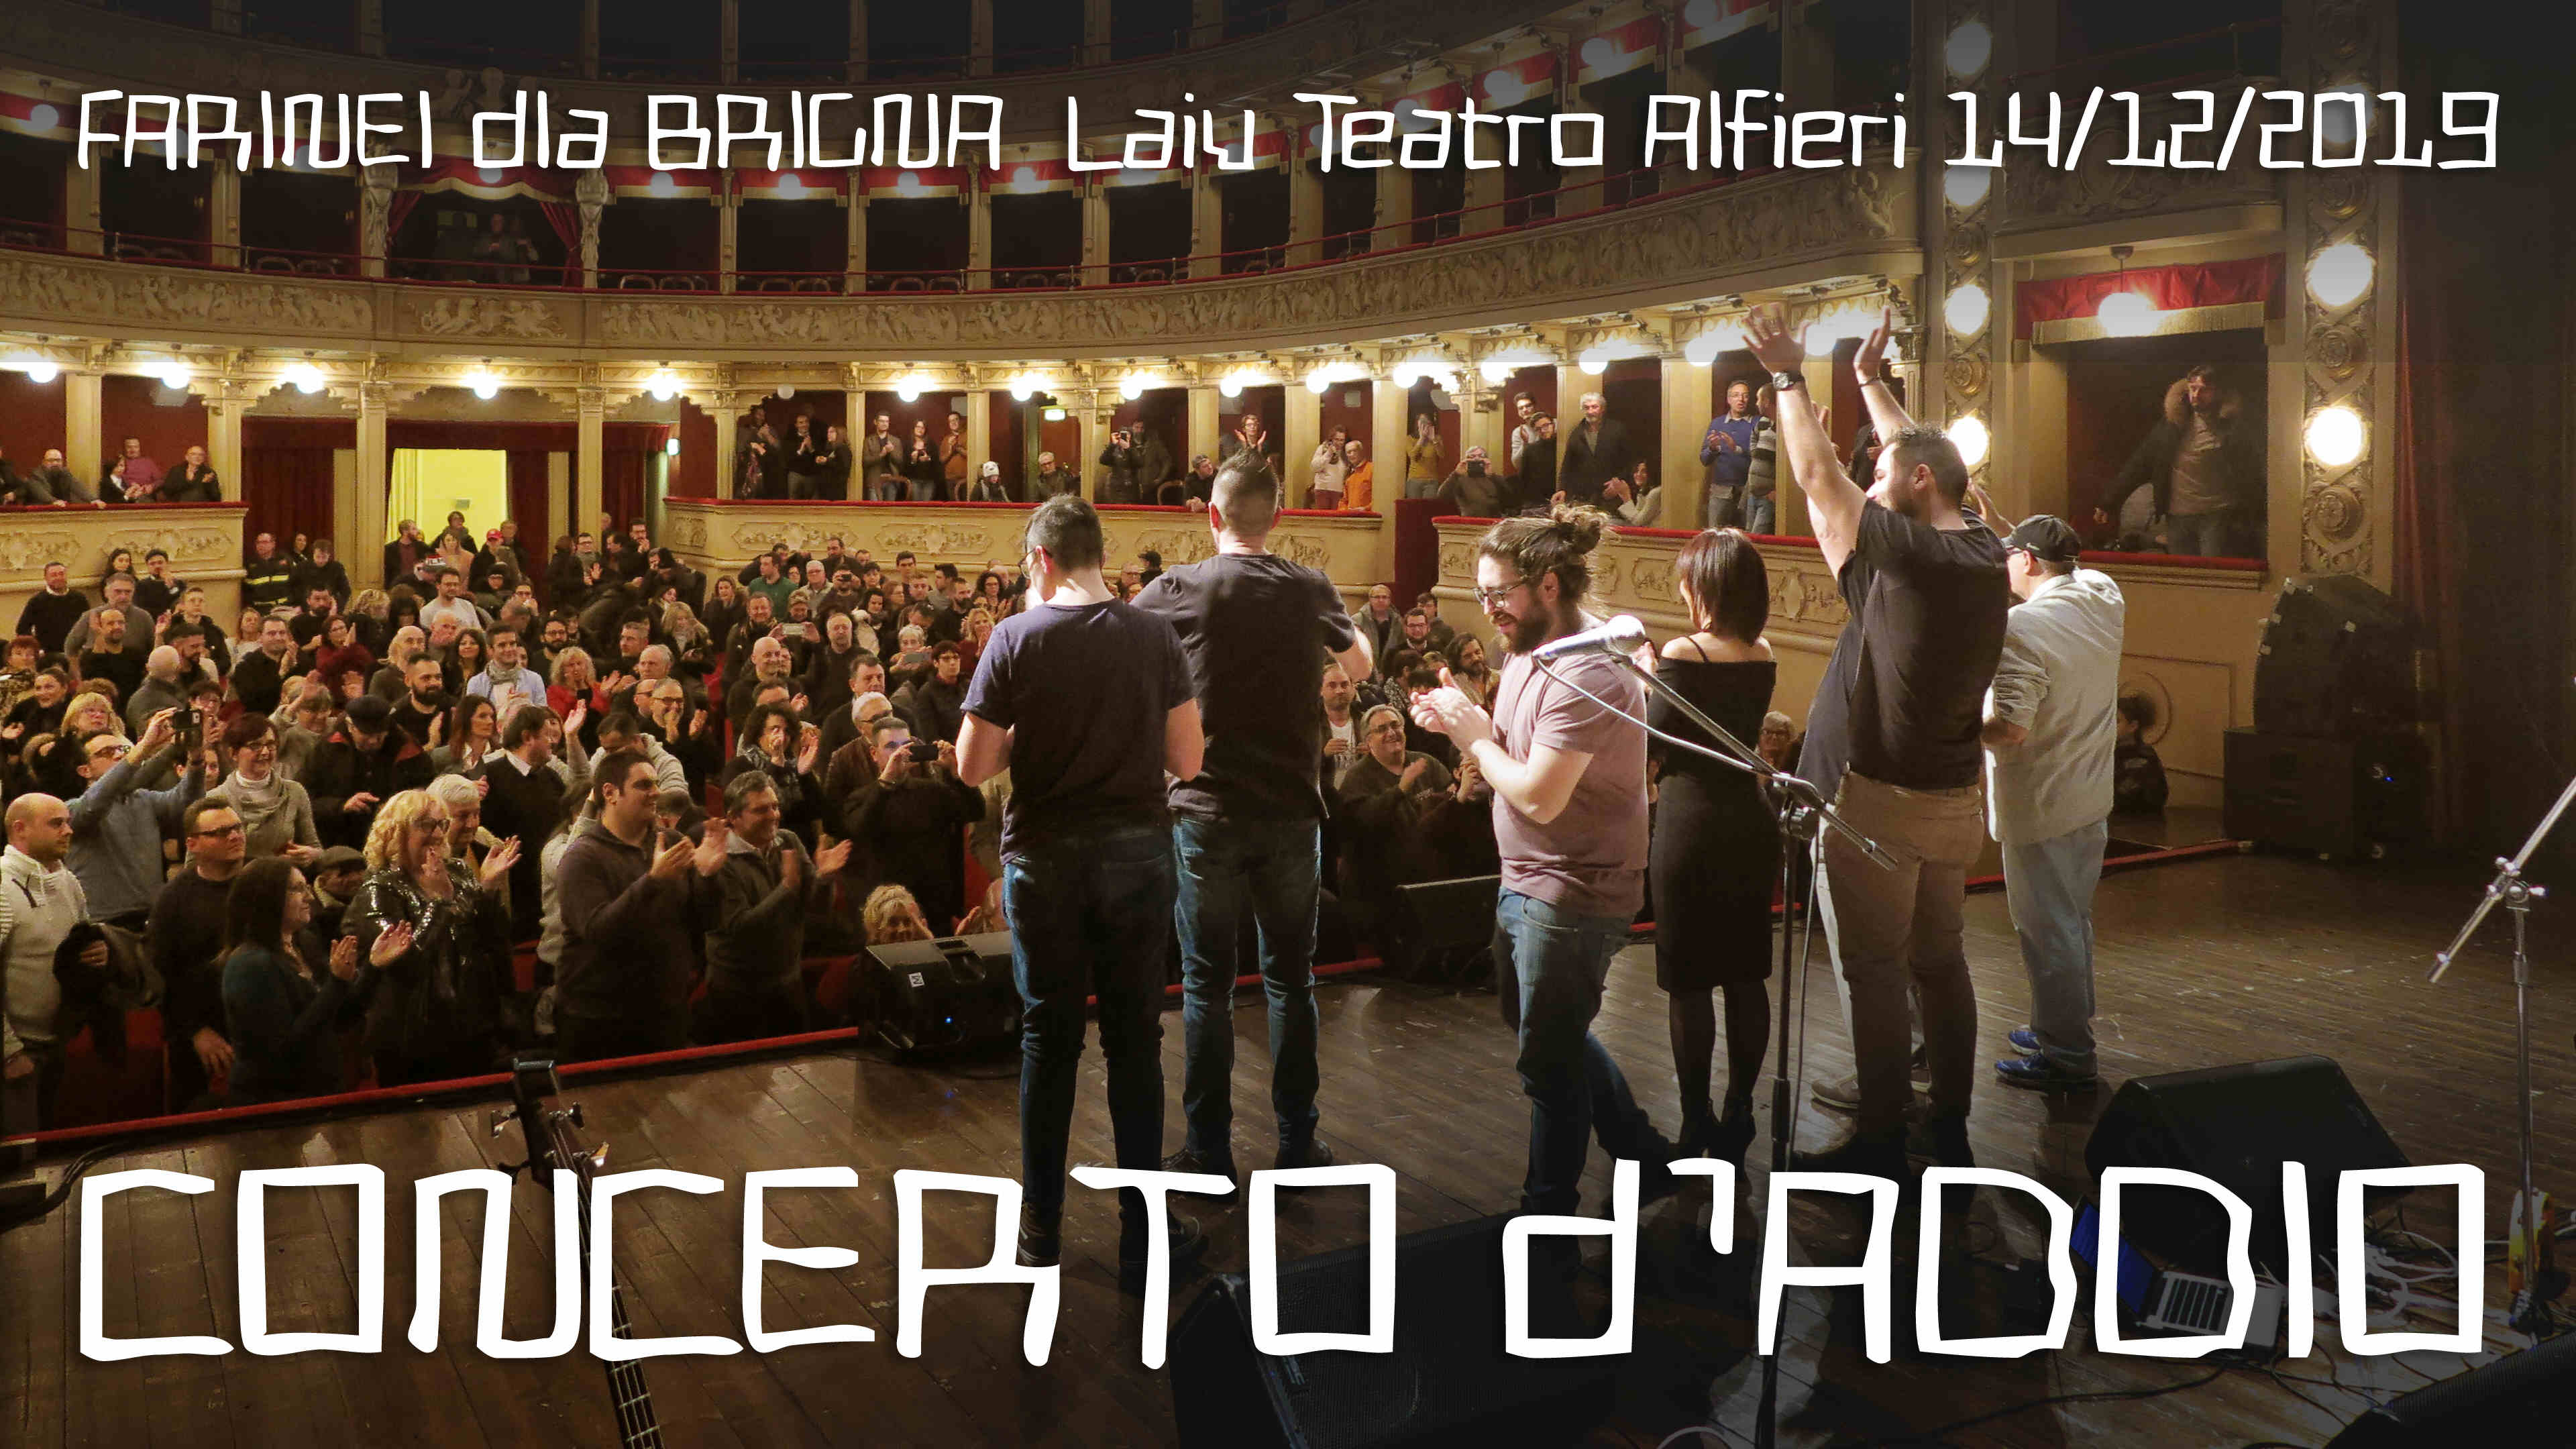 Concerto d'addio dei FARINEI dla BRIGNA, Teatro Alfieri di Asti, 14/12/2019